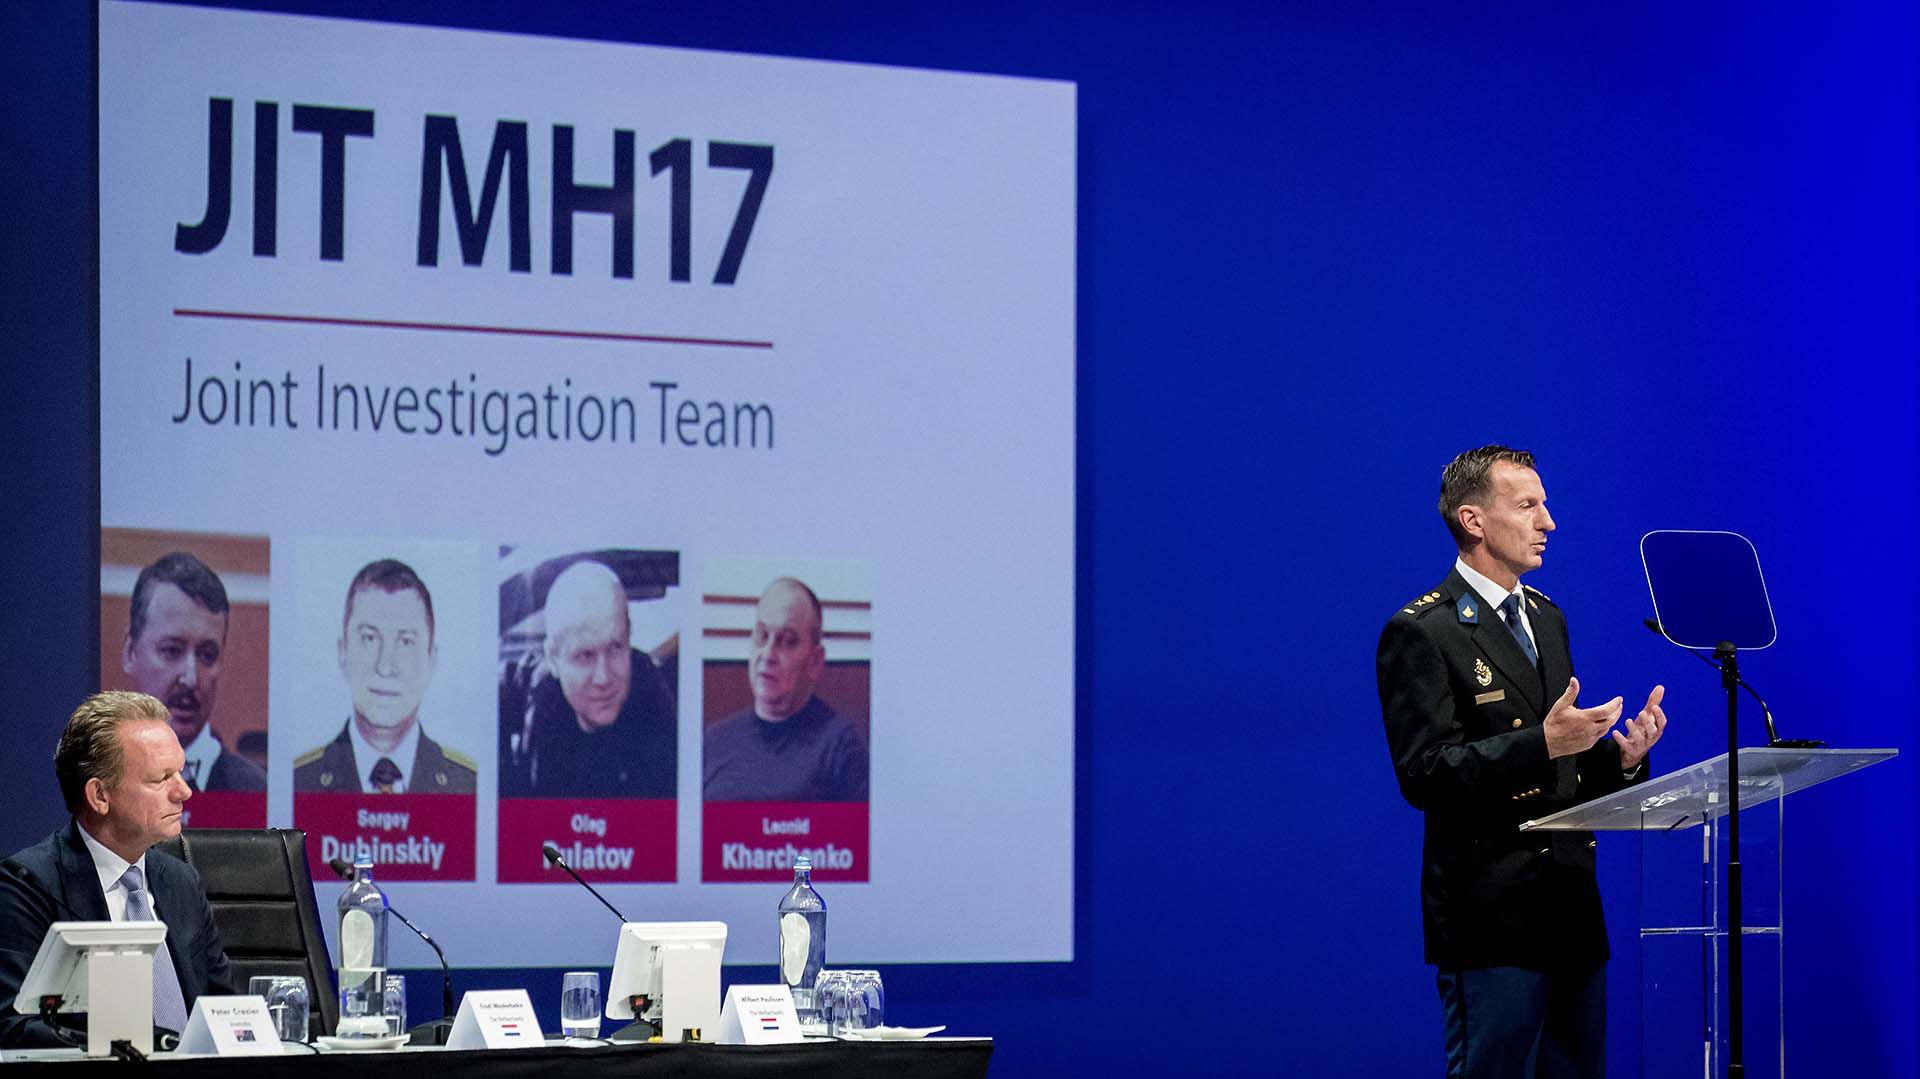 Wilbert Paulissen del Joint Investigation Team (JIT) explica cómo fue disparado y quién lanzó el misil que derribó al vuelo MH17 de Malaysia Airlines en Ucrania. El juicio comenzará en los próximos días en Holanda. (Photo by Robin van Lonkhuijsen / ANP / AFP)